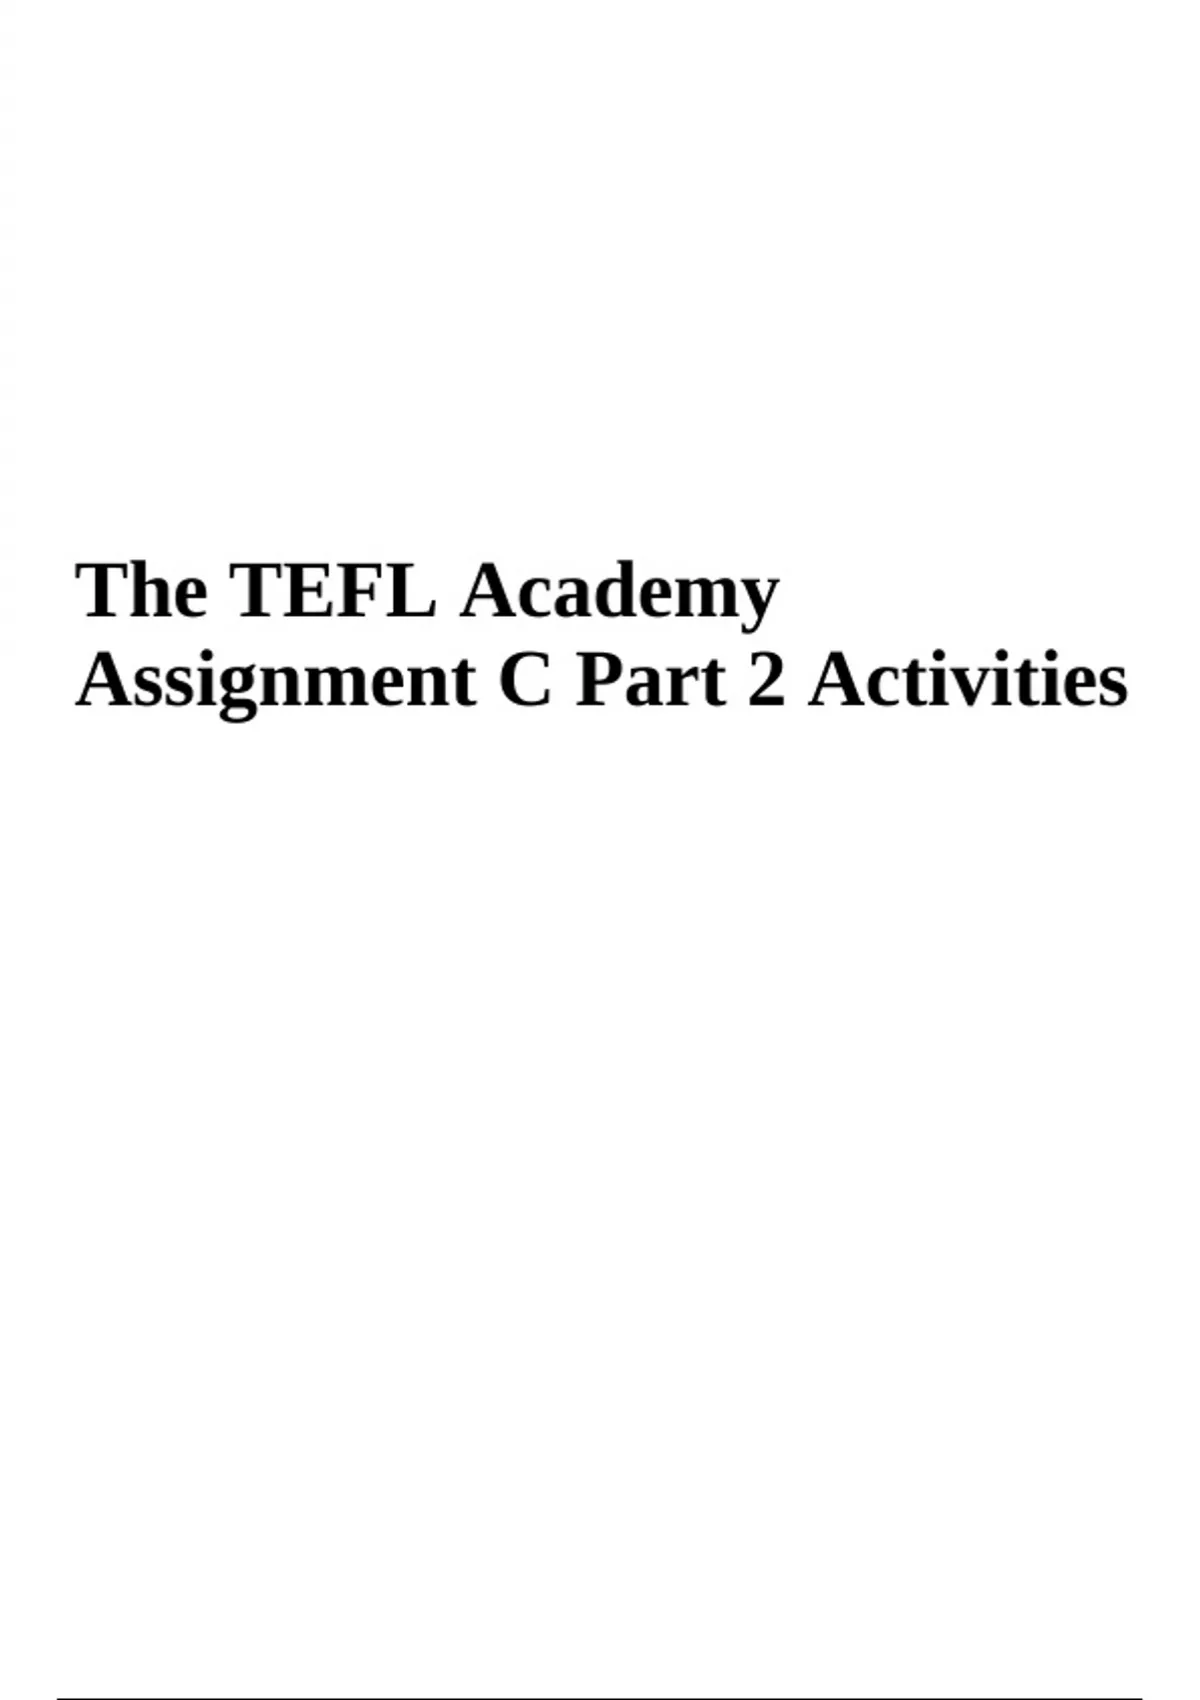 tefl assignment c part 2